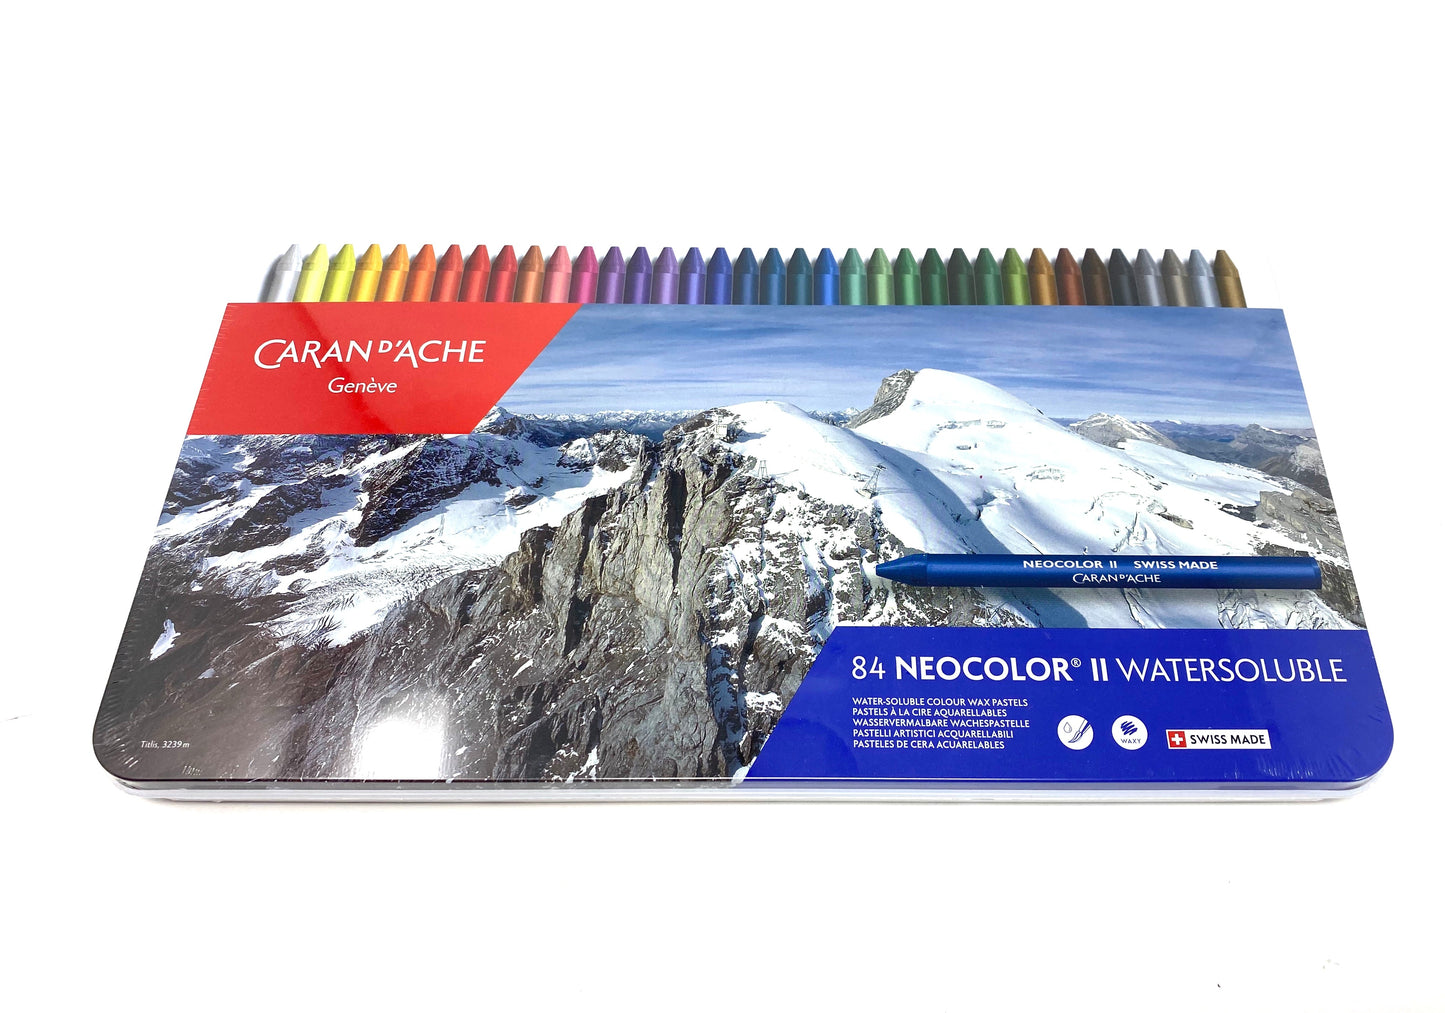 Neocolor II Watersoluble Wax Pastel Set of 84